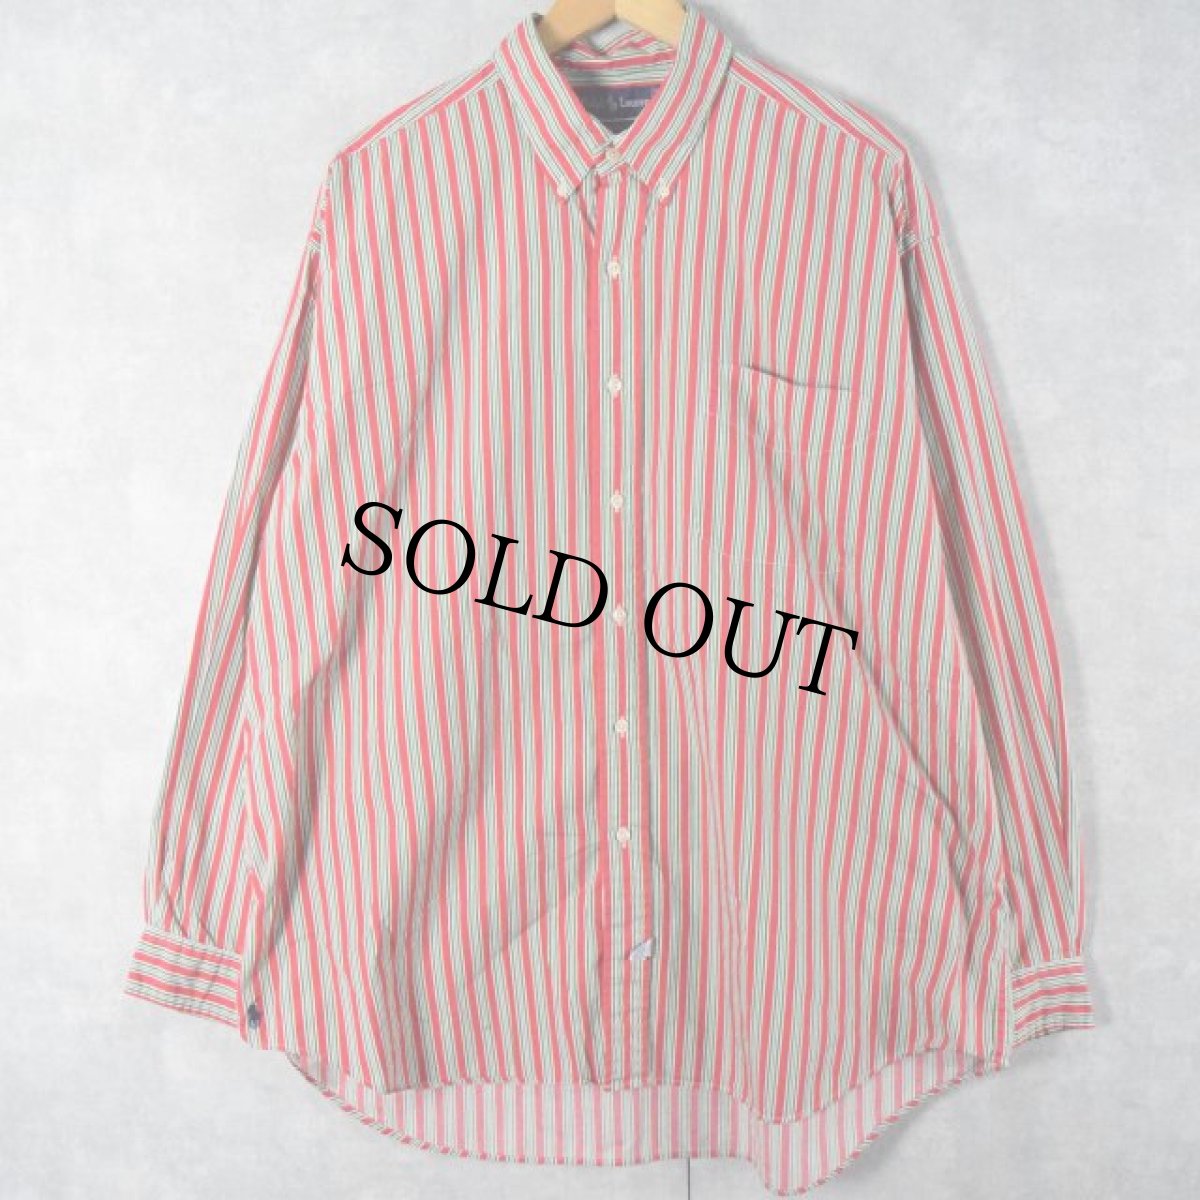 画像1: Ralph Lauren "The Big Shirt" ストライプ柄 ボタンダウンコットンシャツ XL (1)